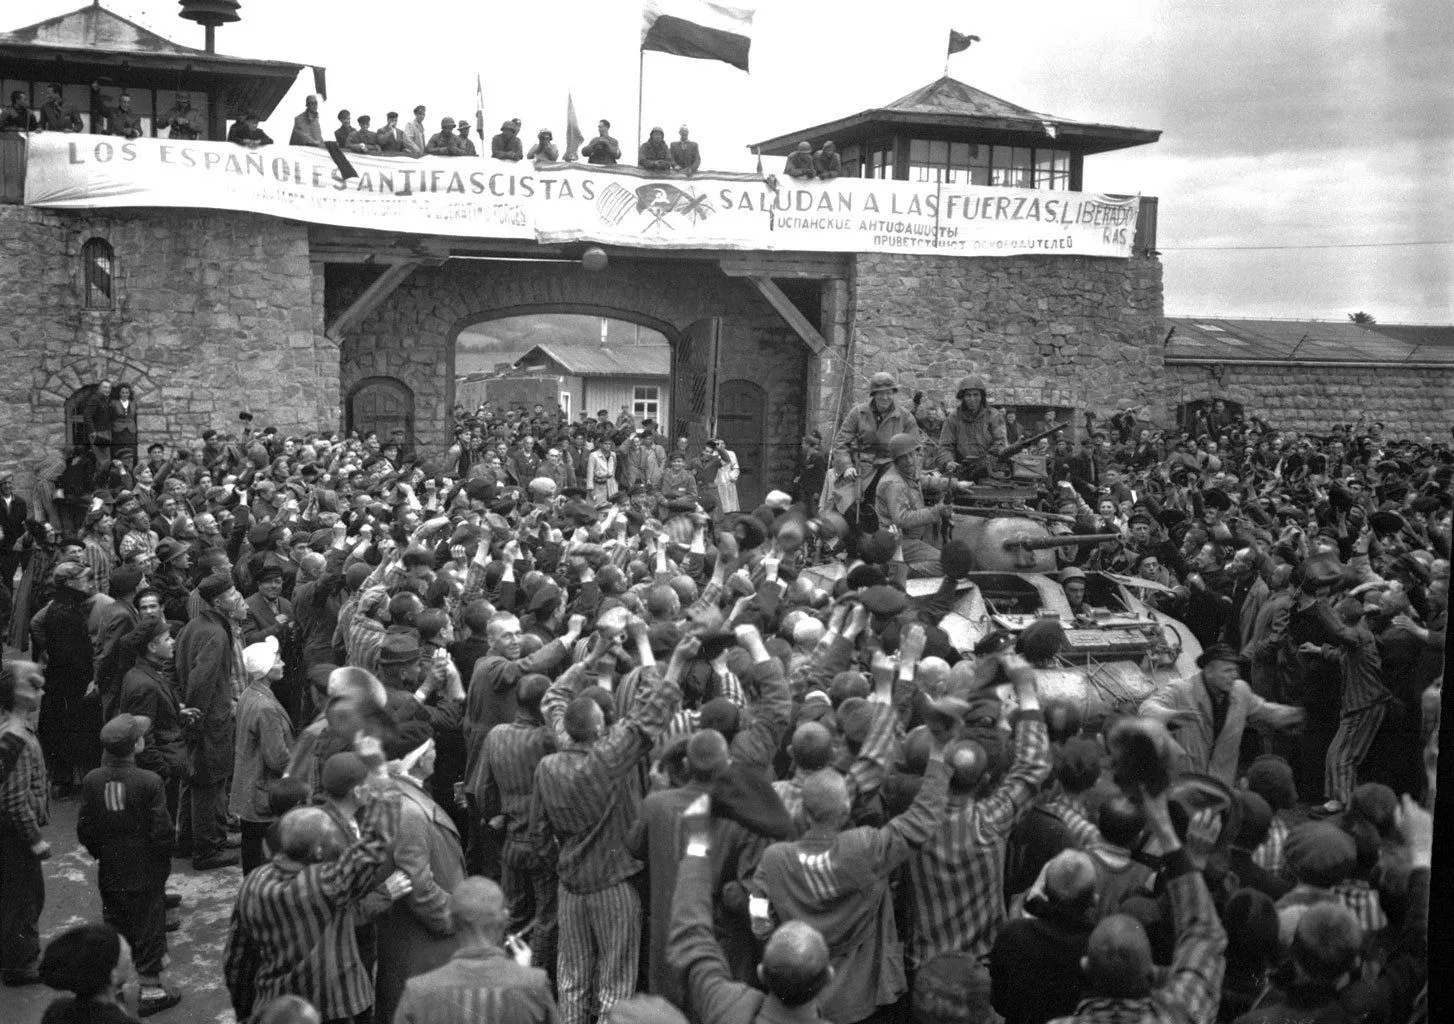 Los españoles antifascistas saludan a las fuerzas liberadoras, fotografía del campo Mauthausen en Linz, Austria, 1945.